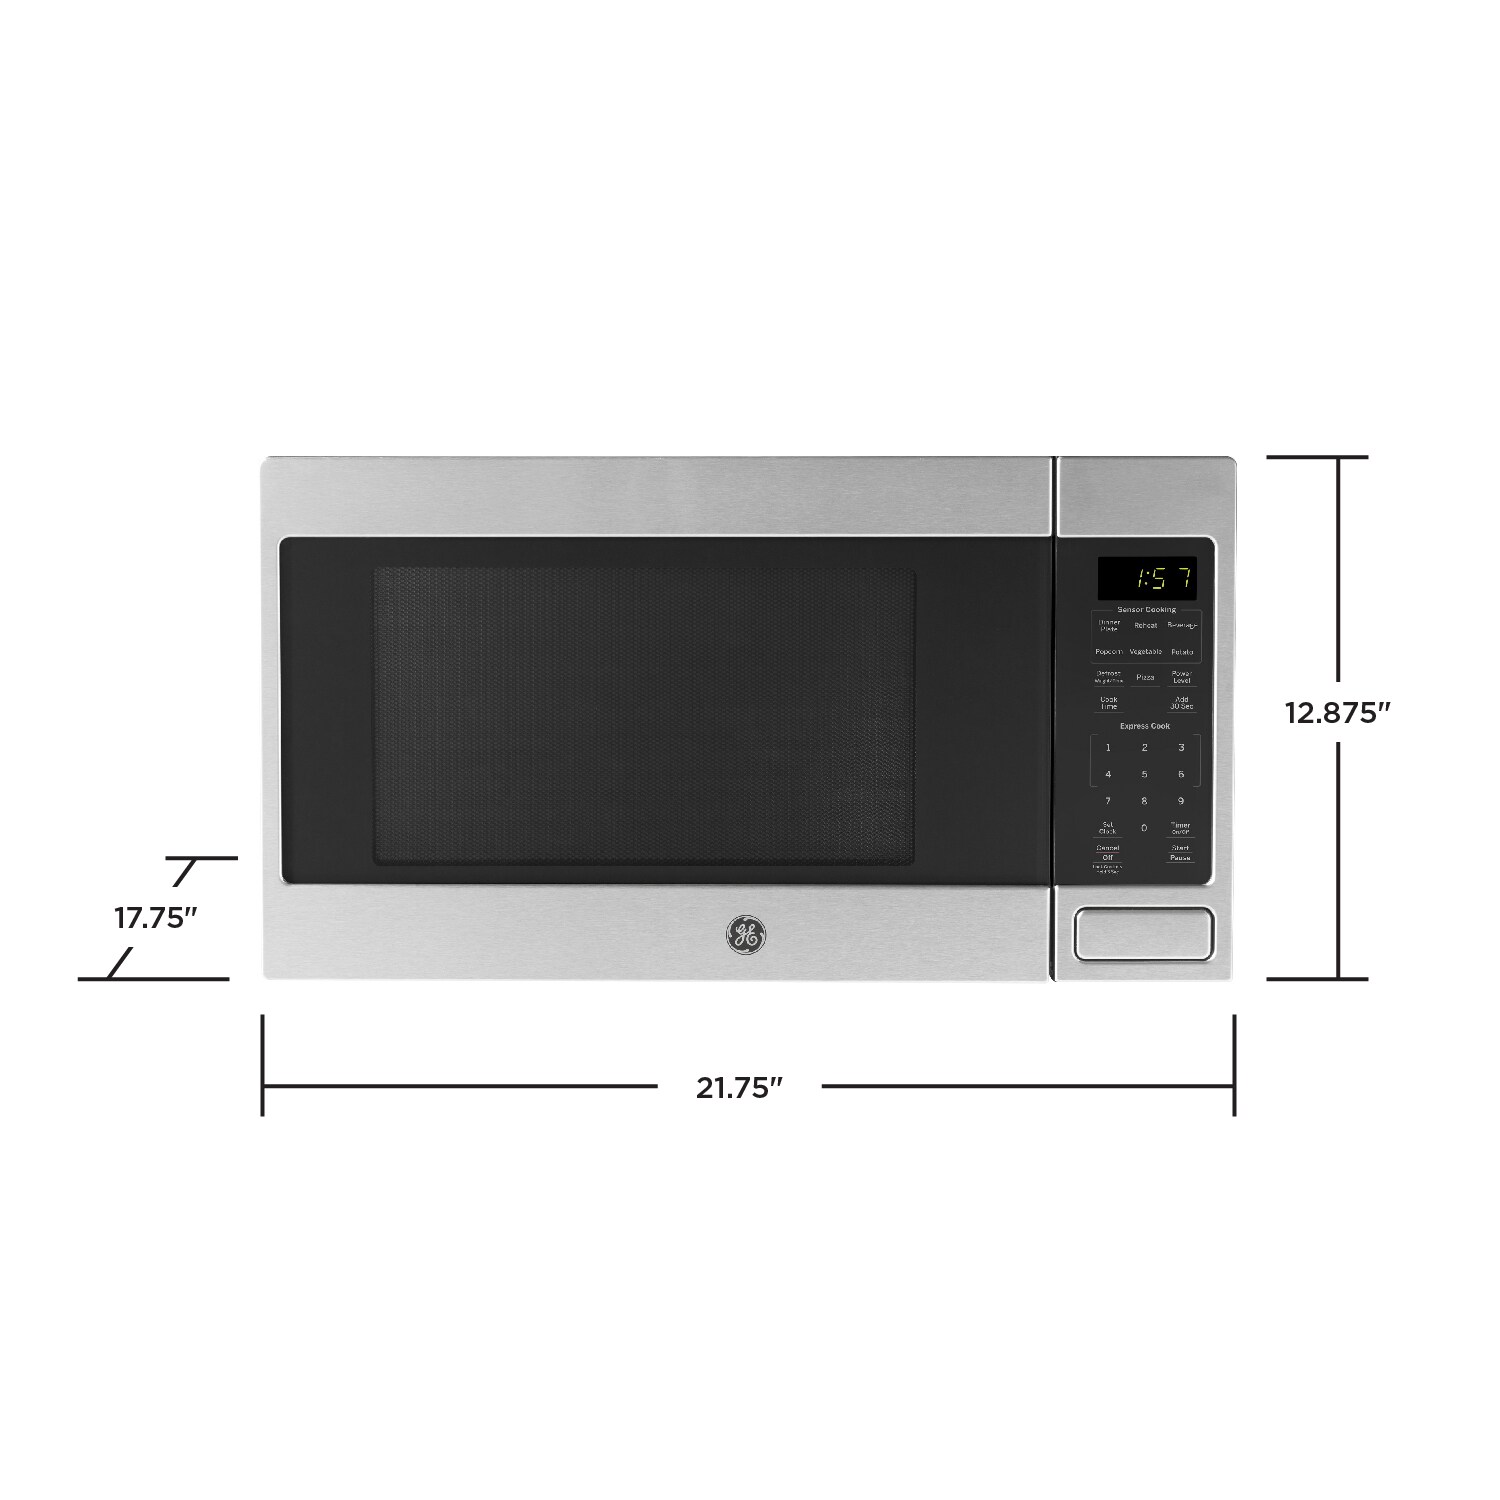 Renewed Stainless Steel GE 1150 Watt Countertop Microwave Oven 